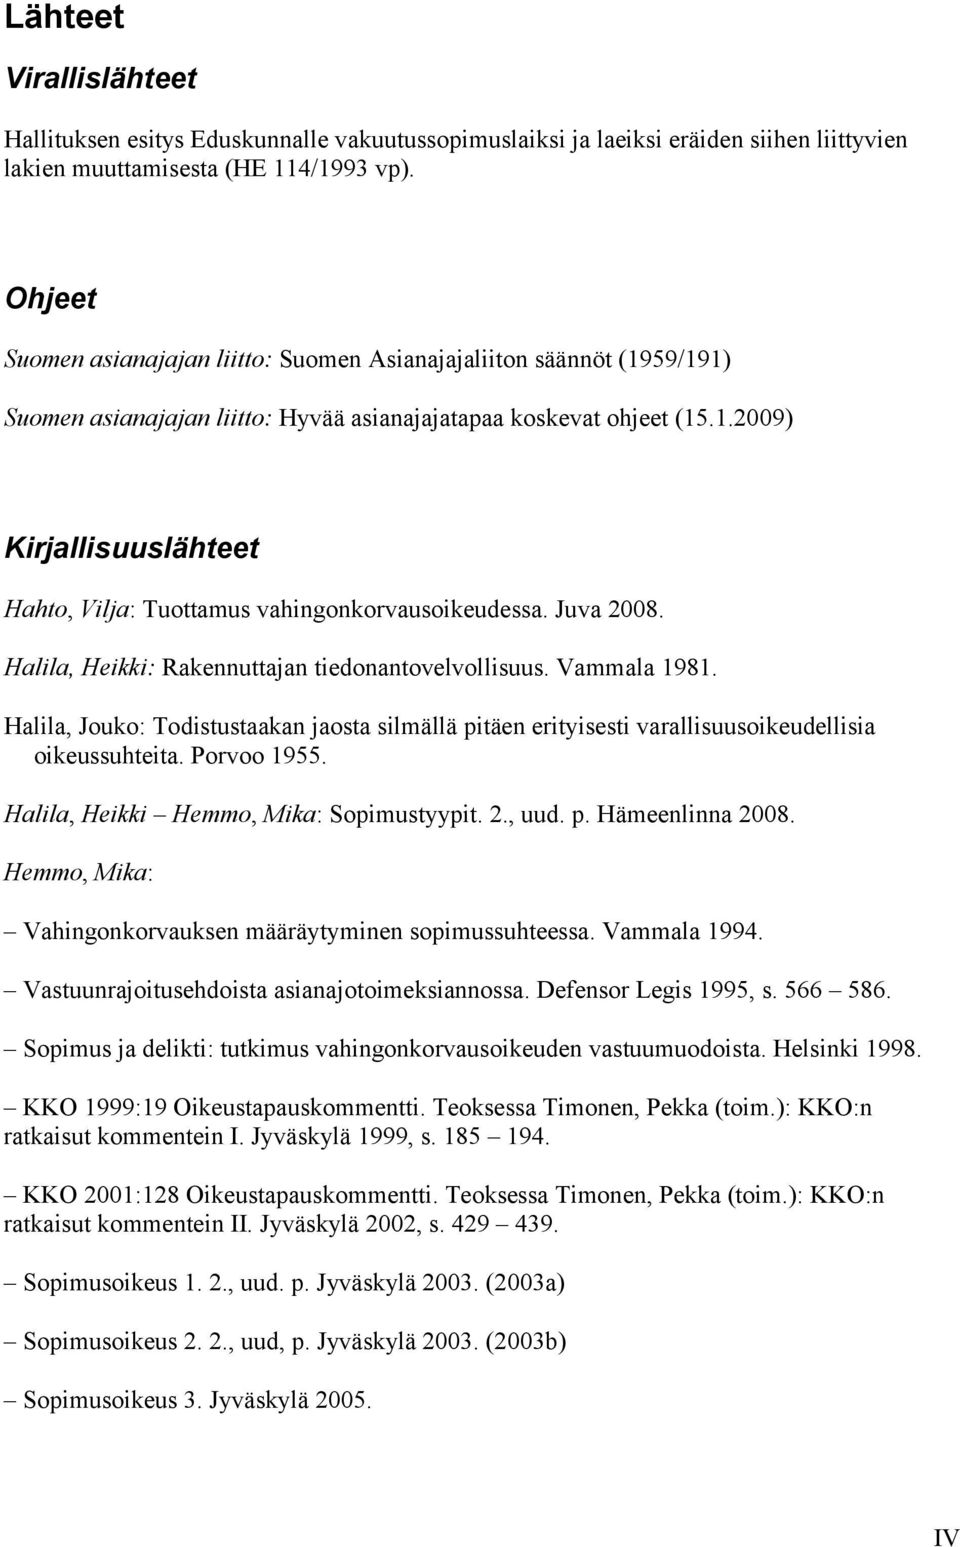 Juva 2008. Halila, Heikki: Rakennuttajan tiedonantovelvollisuus. Vammala 1981. Halila, Jouko: Todistustaakan jaosta silmällä pitäen erityisesti varallisuusoikeudellisia oikeussuhteita. Porvoo 1955.